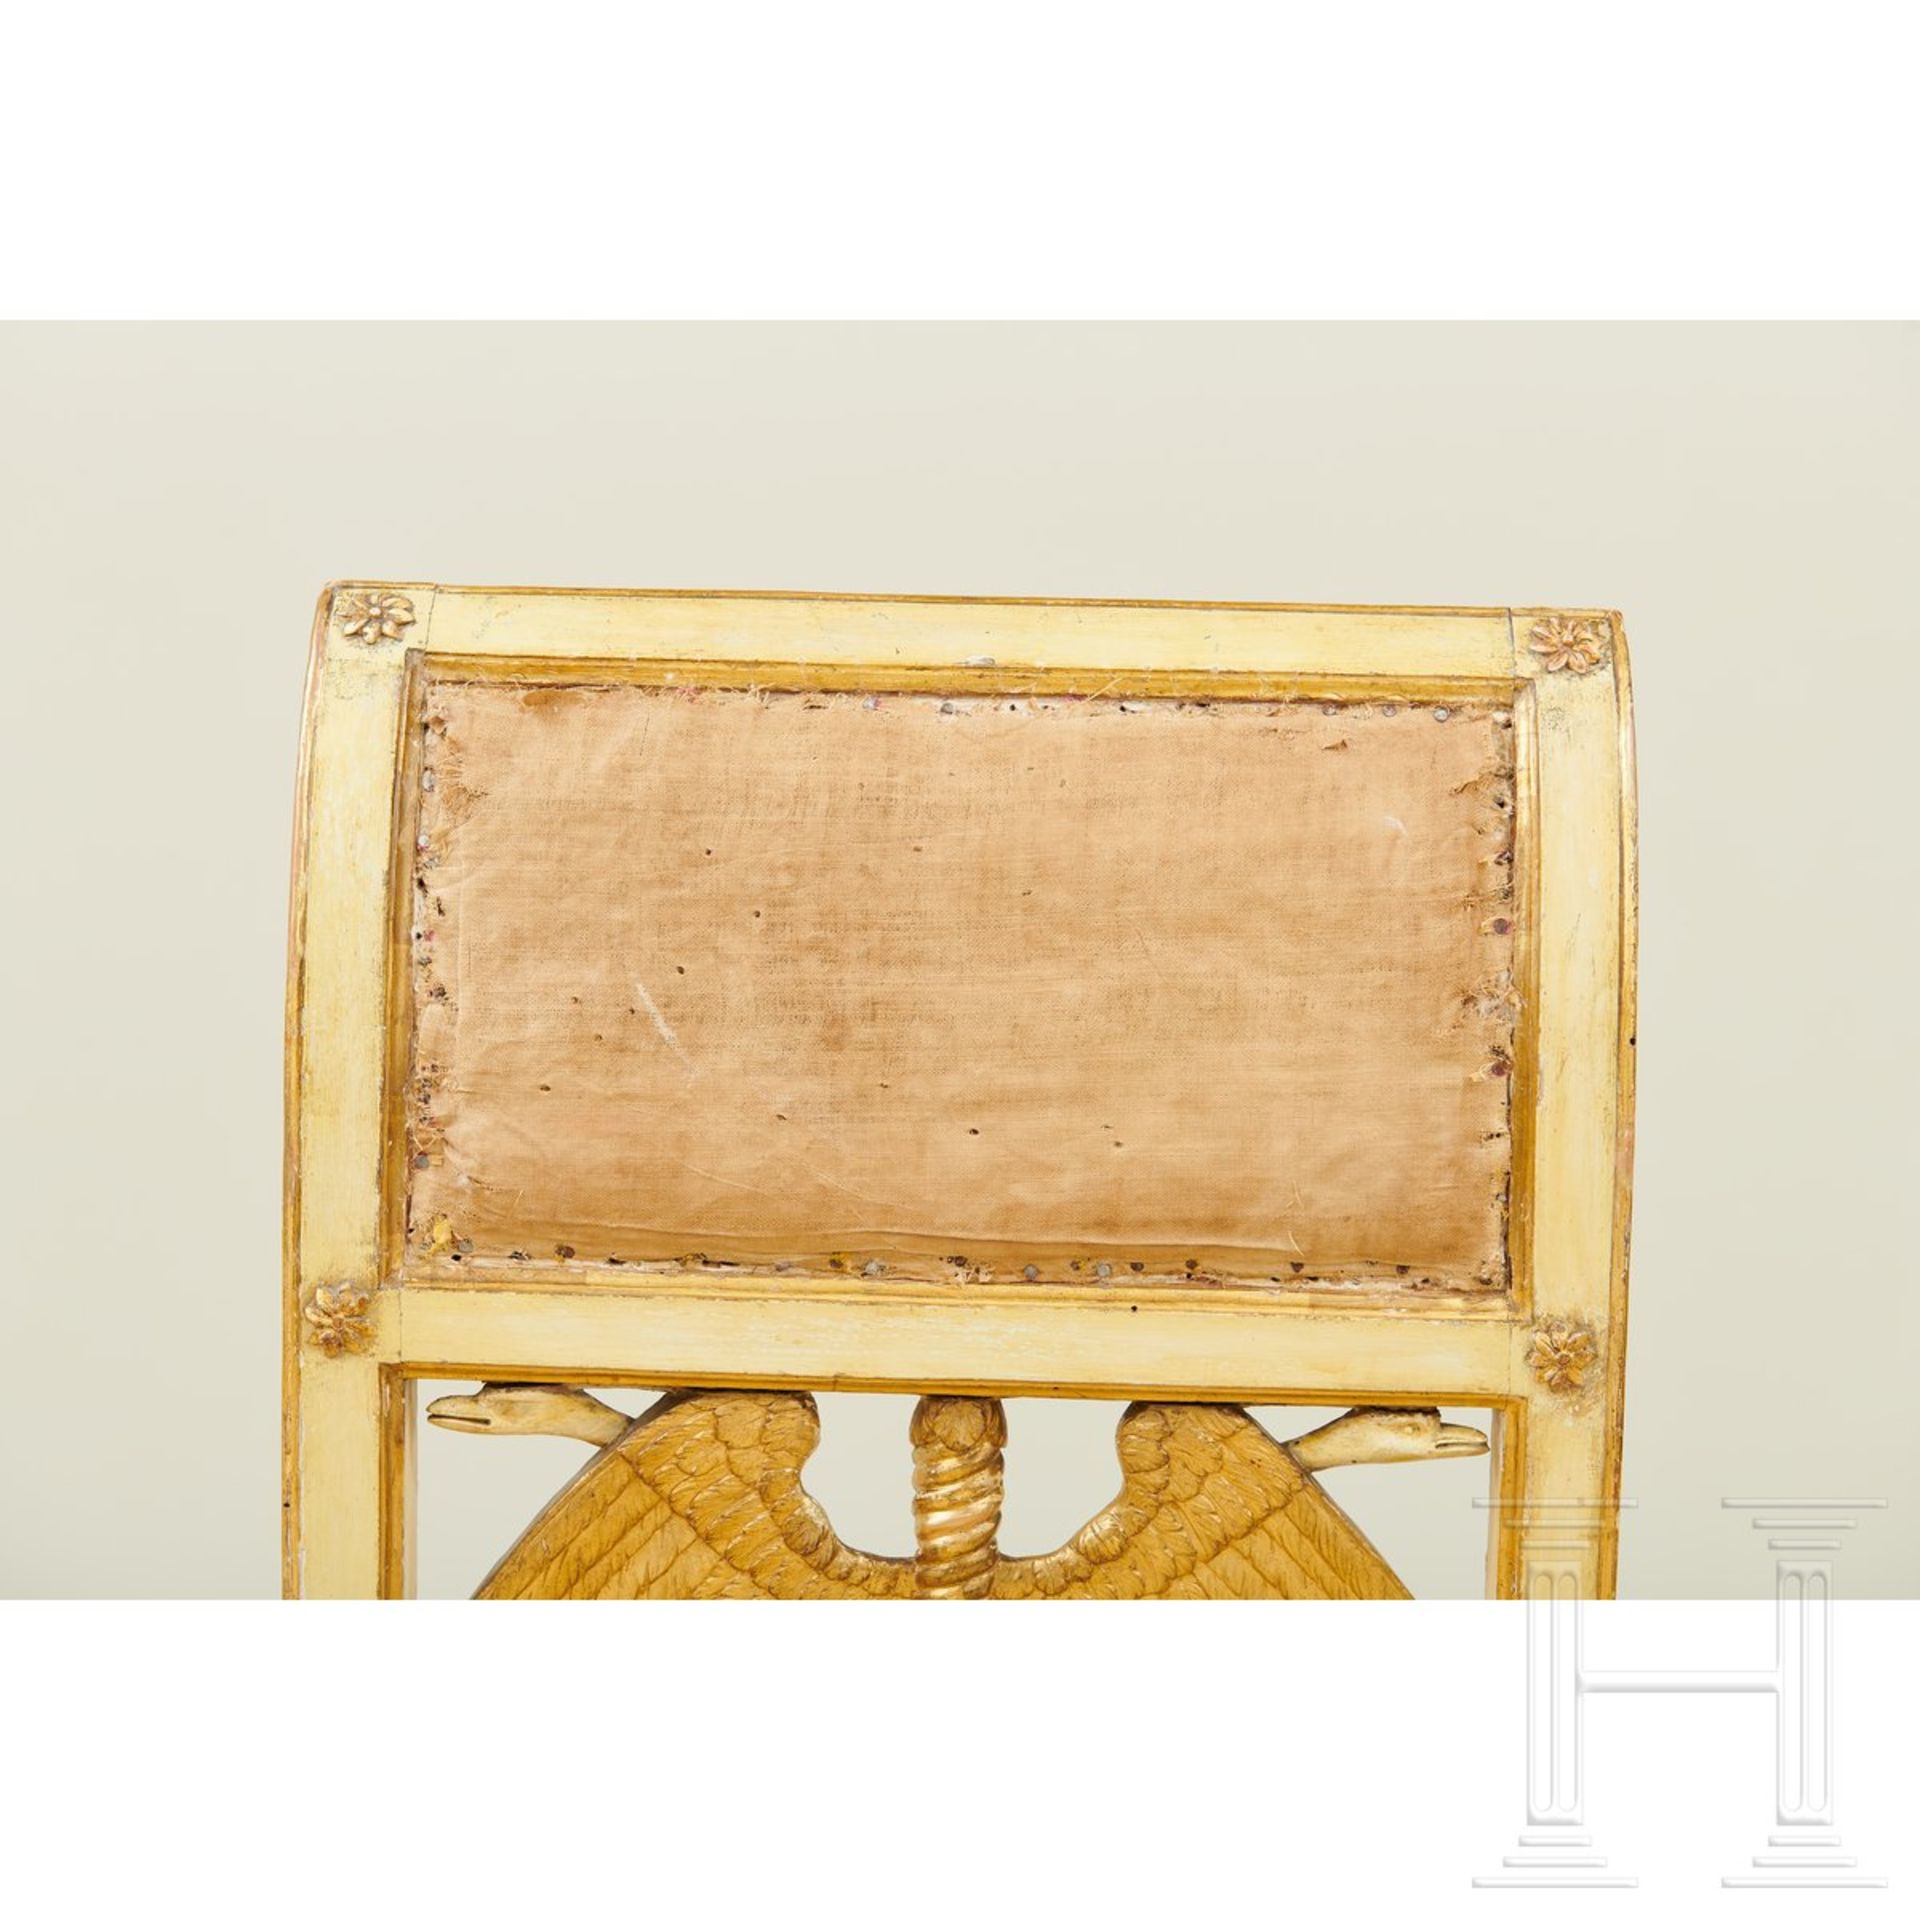 Ein Paar klassizistische Stühle, Lucca, um 1800 - Image 6 of 16